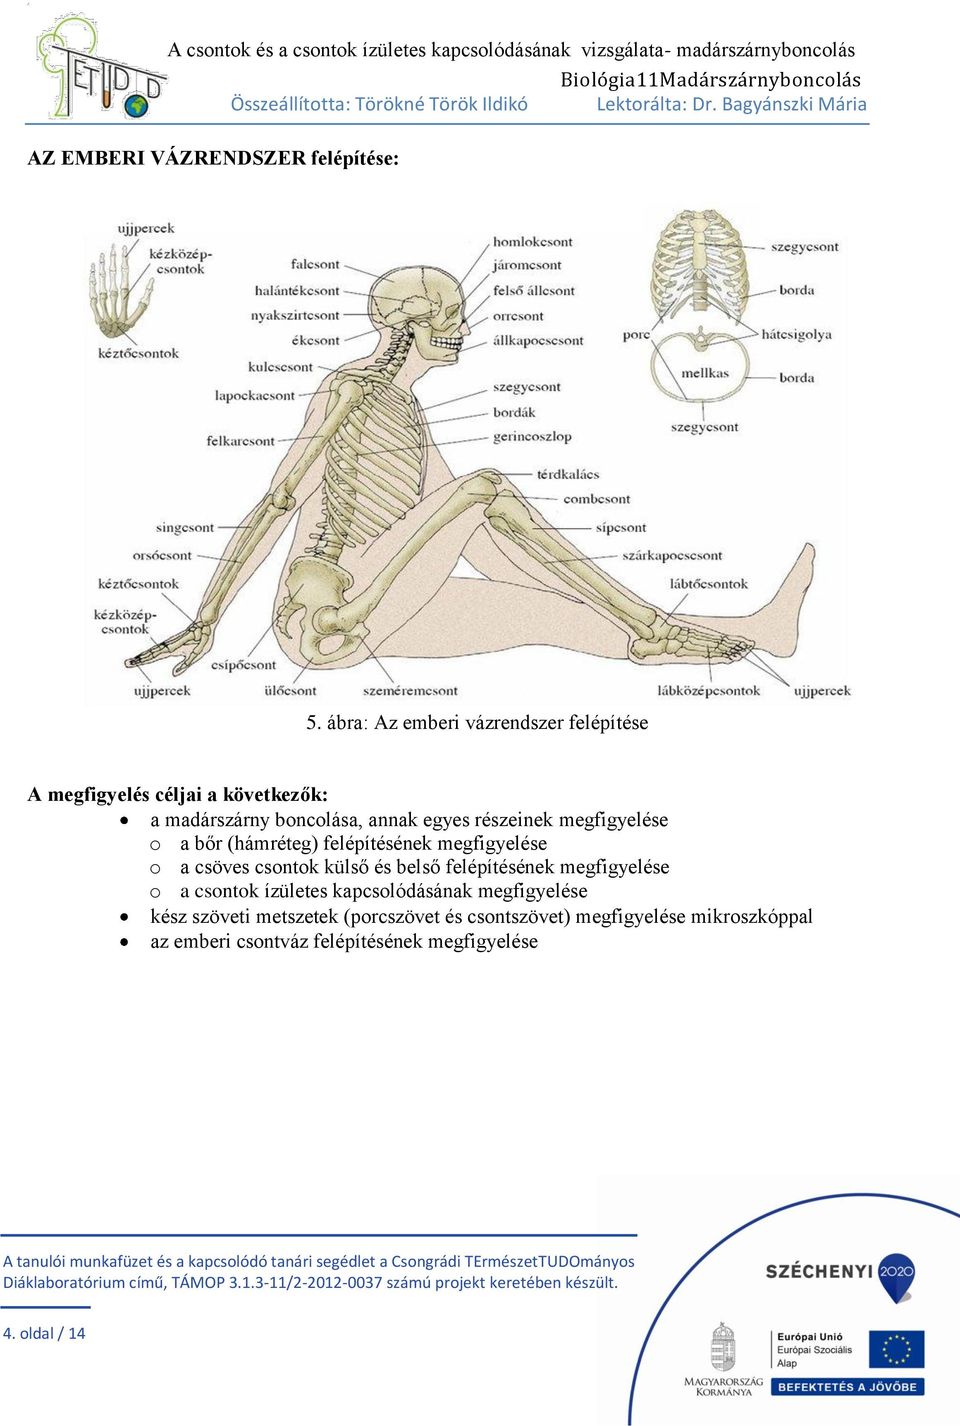 részeinek megfigyelése o a bőr (hámréteg) felépítésének megfigyelése o a csöves csontok külső és belső felépítésének